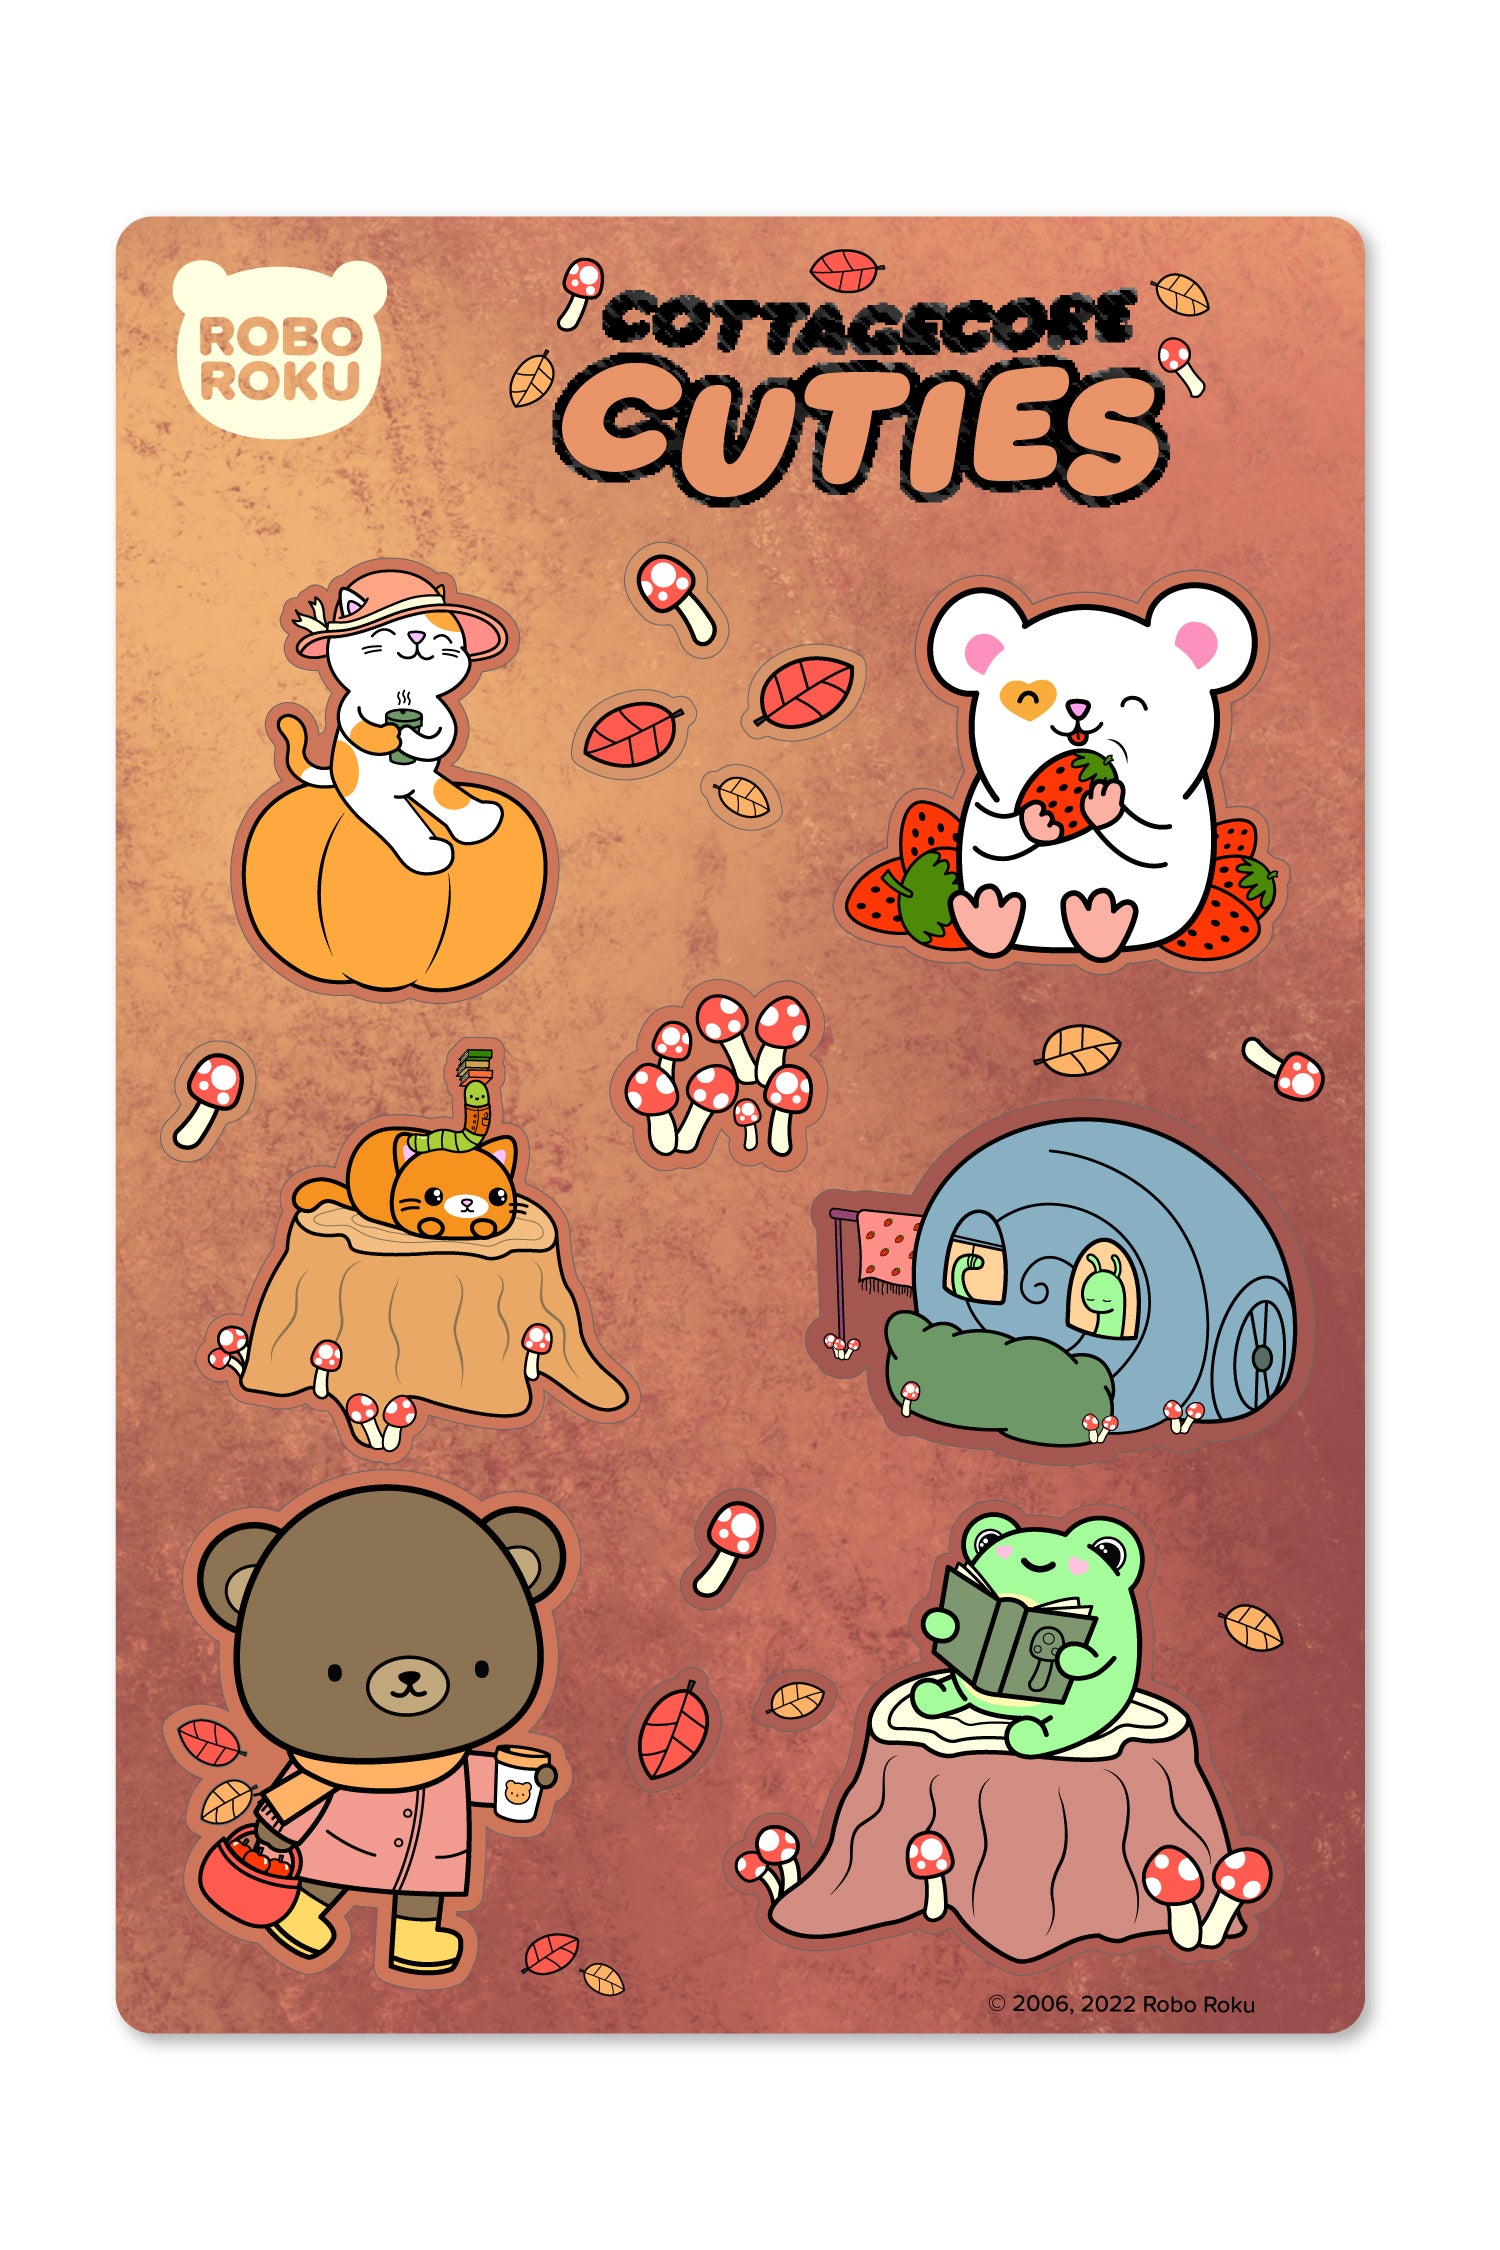 Cottagecore Cuties Gloss Sticker Sheet – Robo Roku